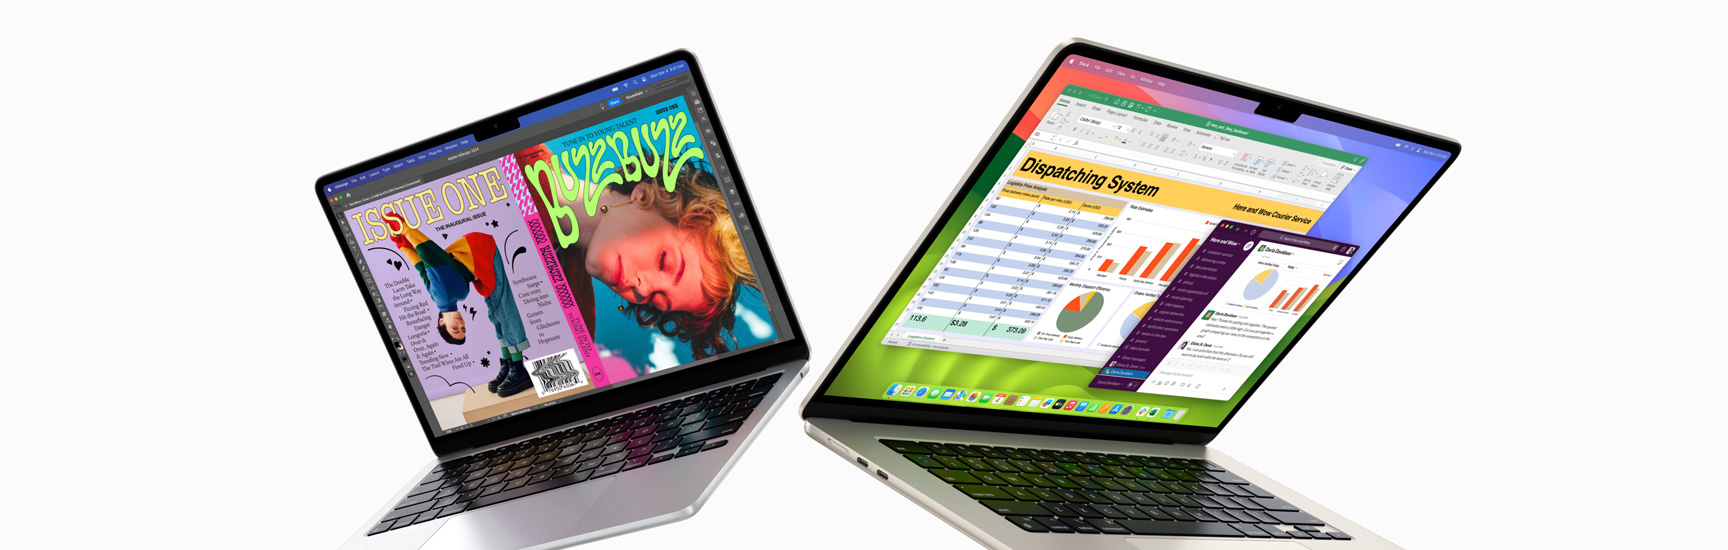 MacBook Air 13 inch ở bên trái và MacBook Air 15 inch ở bên phải đang hé mở một phần. Màn hình 13 inch hiển thị ảnh một bìa tạp chí đầy màu sắc được tạo ra bằng In Design. Màn hình 15 inch hiển thị Microsoft Excel và Slack.